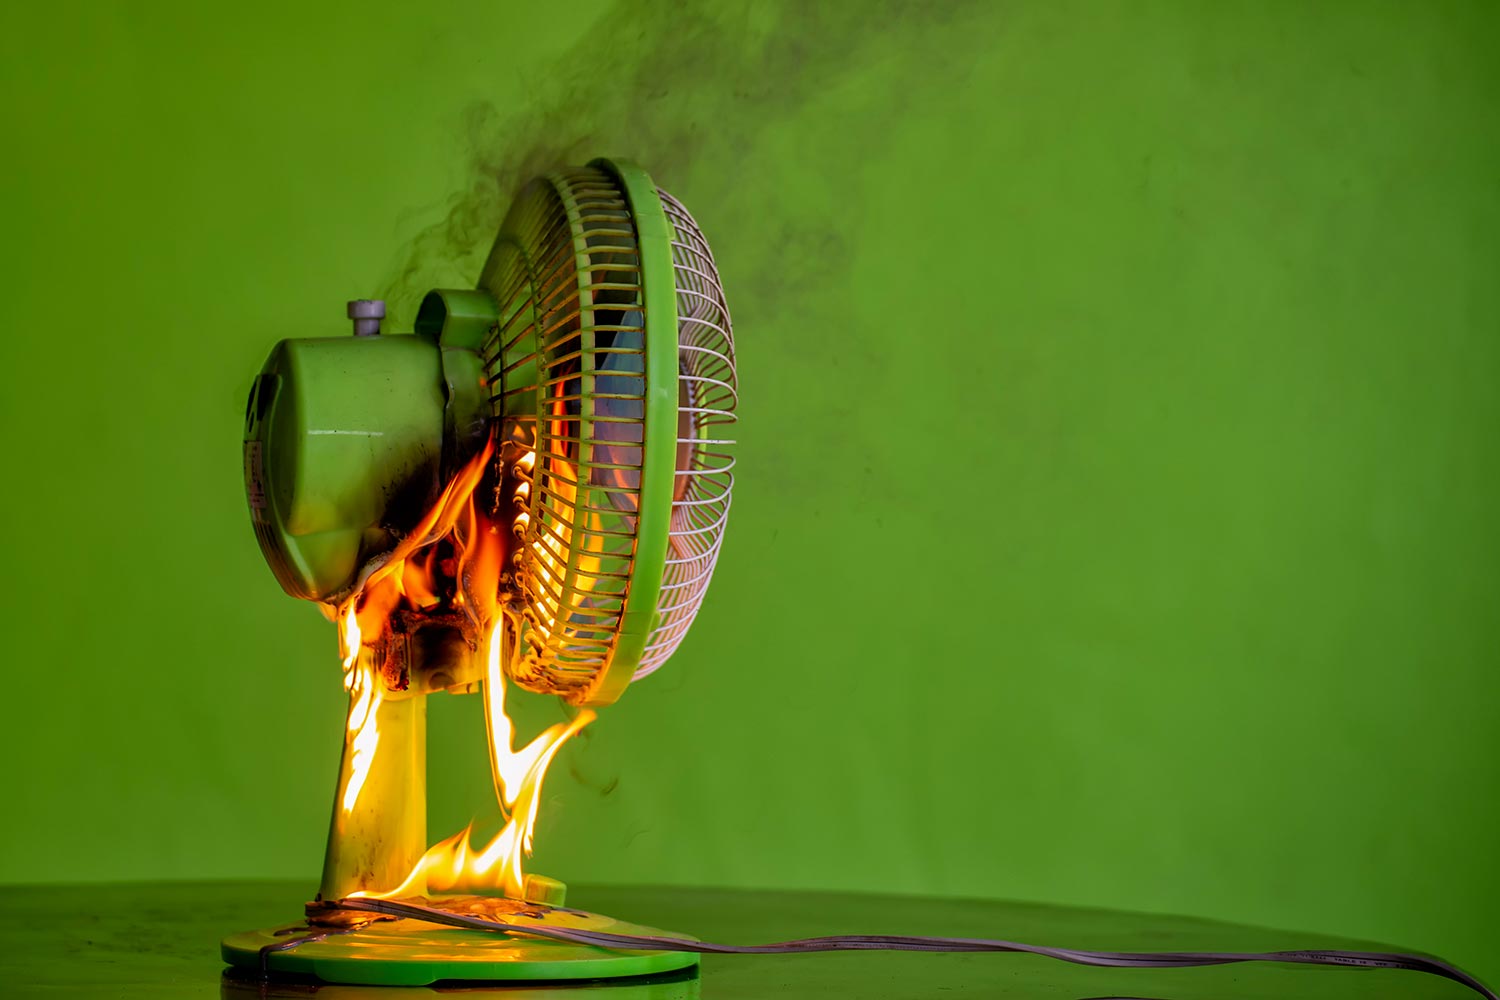 Electric fan catch fire